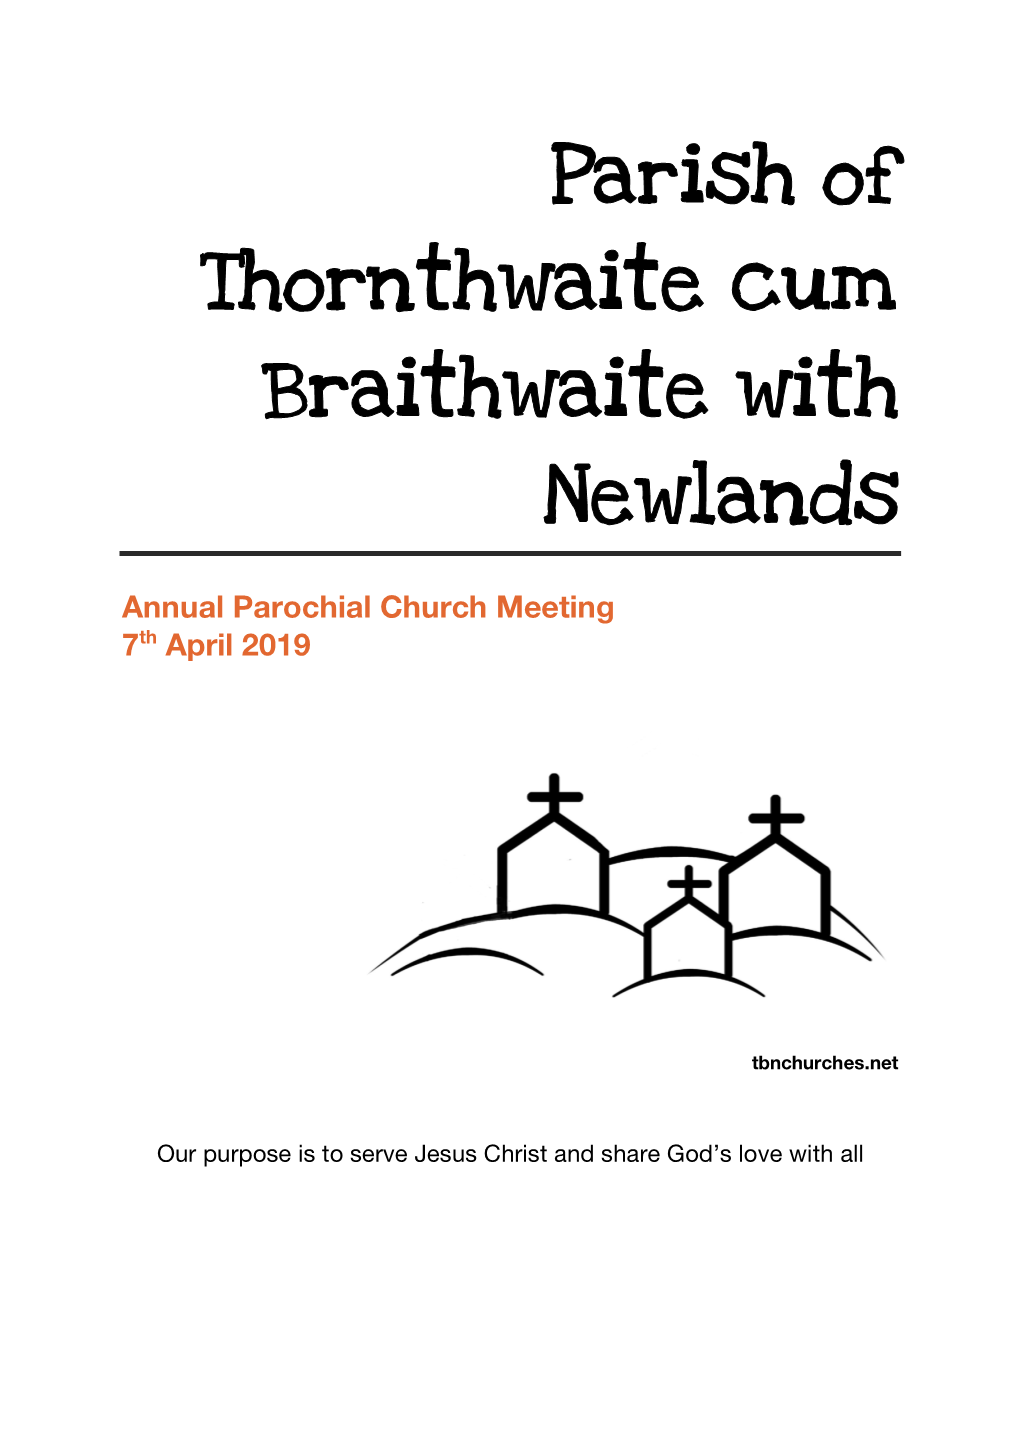 Parish of Thornthwaite Cum Braithwaite with Newlands